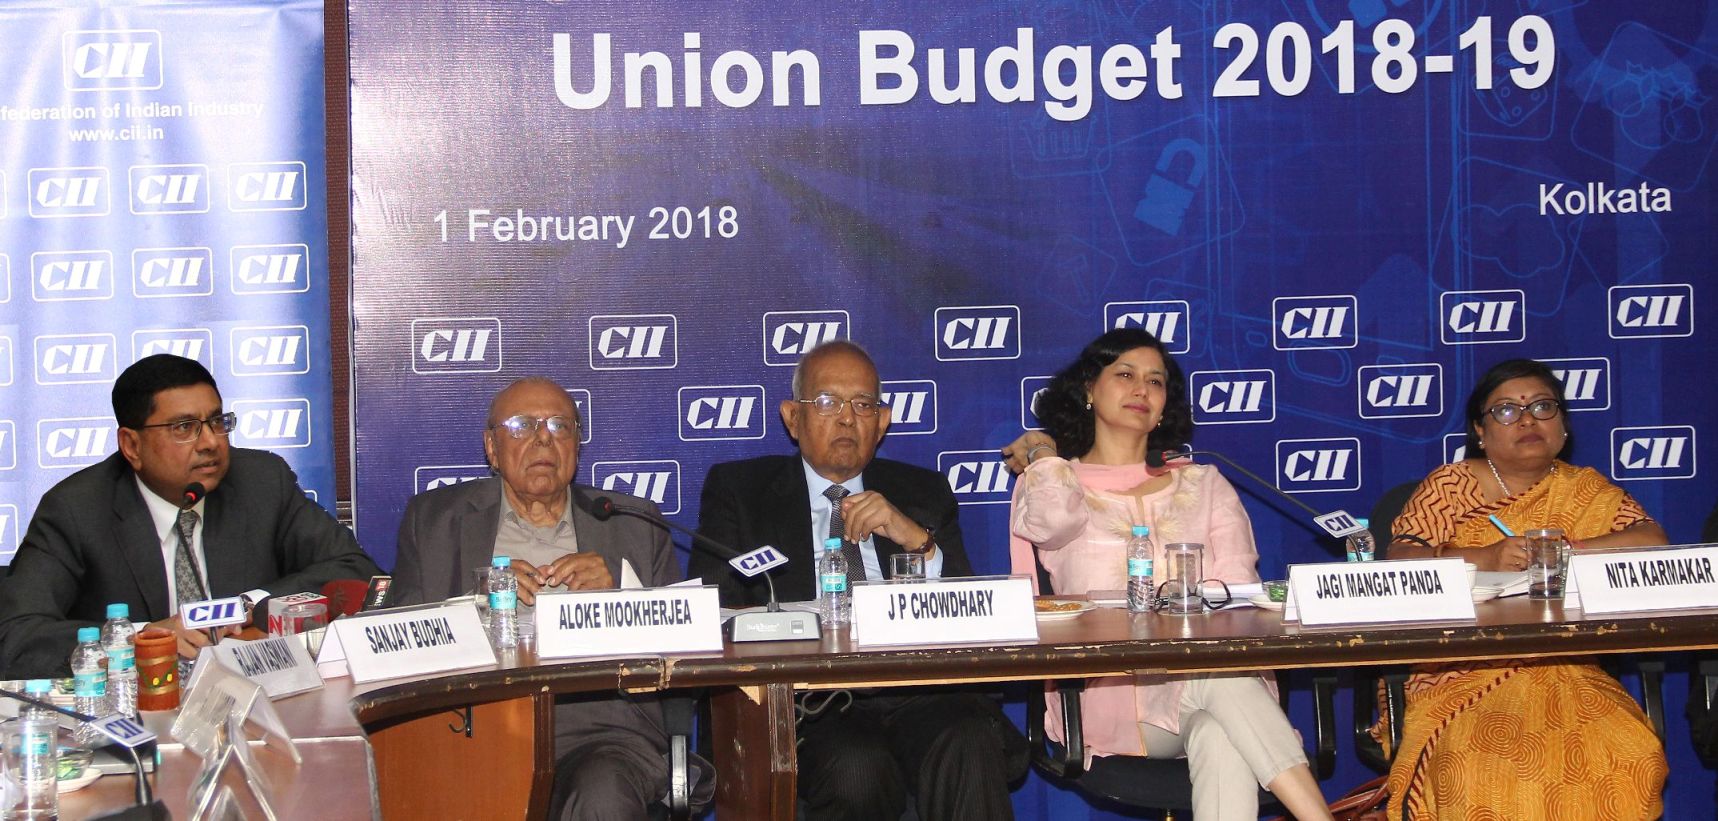 CII, Union Budget 2018